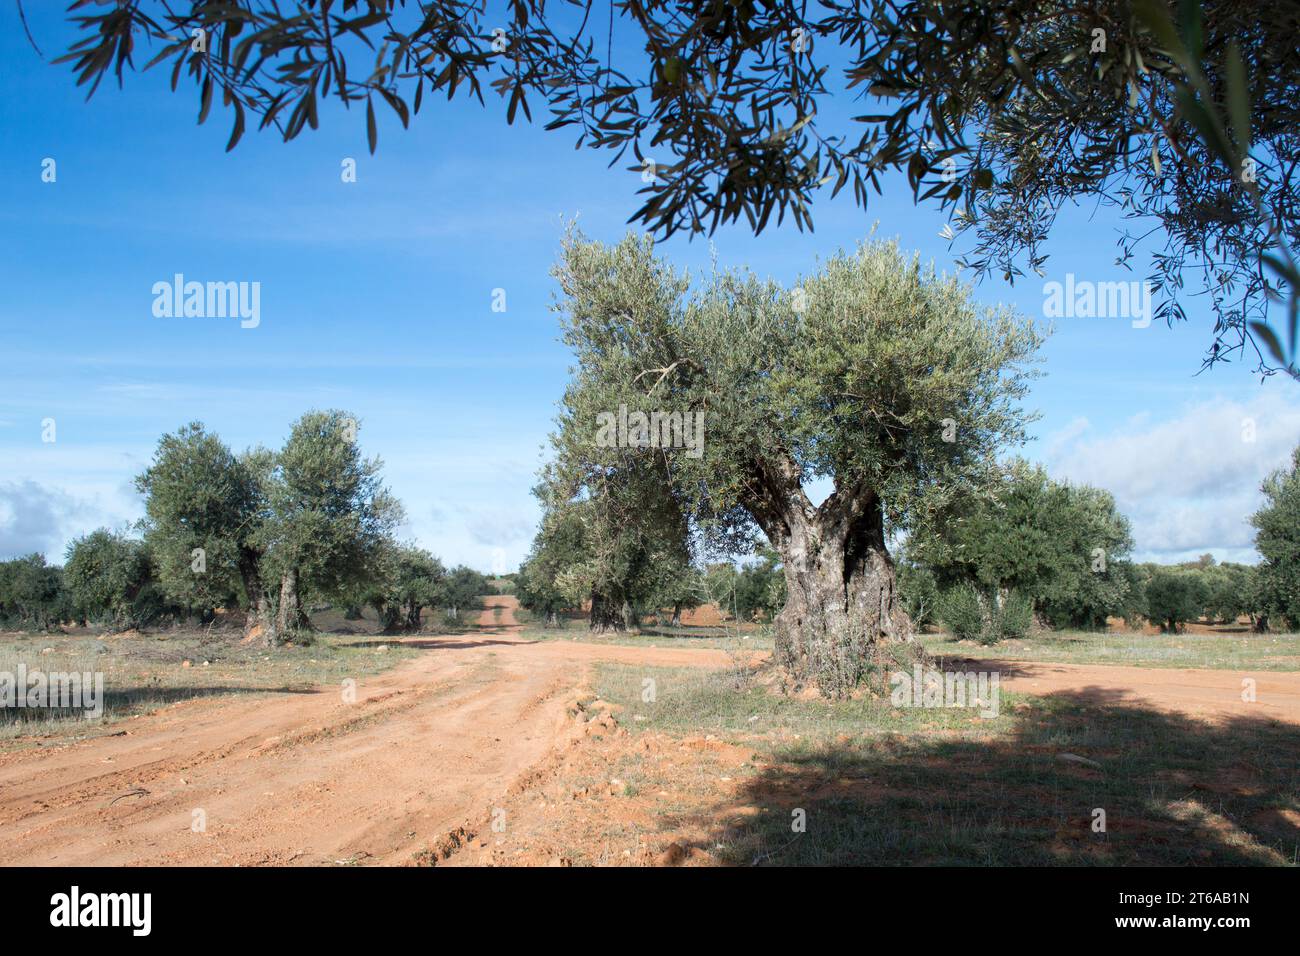 Agricultura, olivar Stock Photo